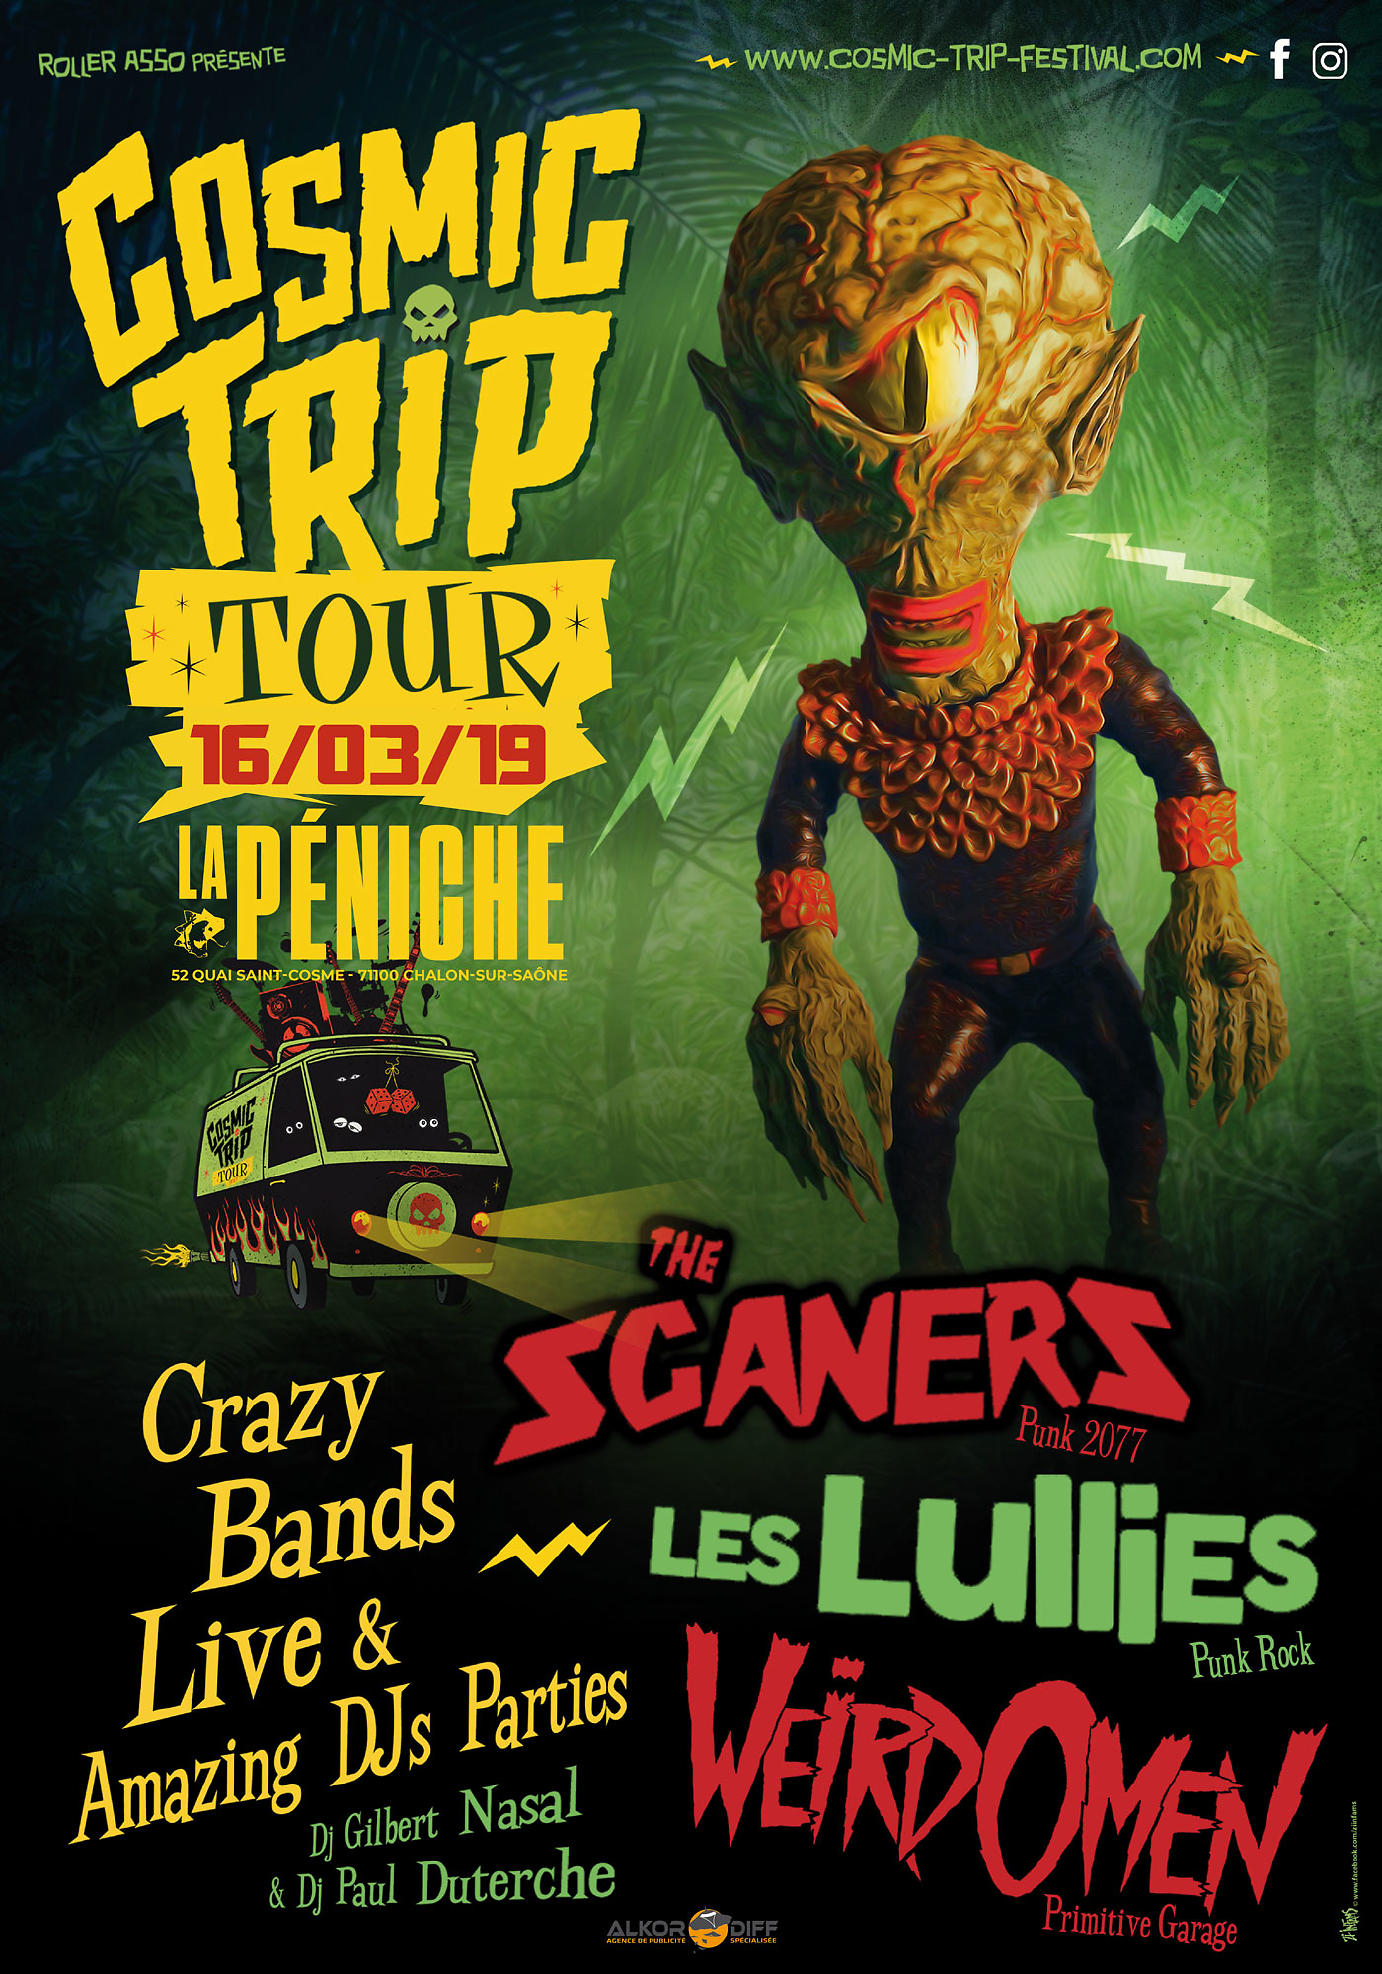 affiche Cosmic Trip Tour : The Scaners + Les Lullies + Weird Omen + Paul Duterche & Gilbert Nasal